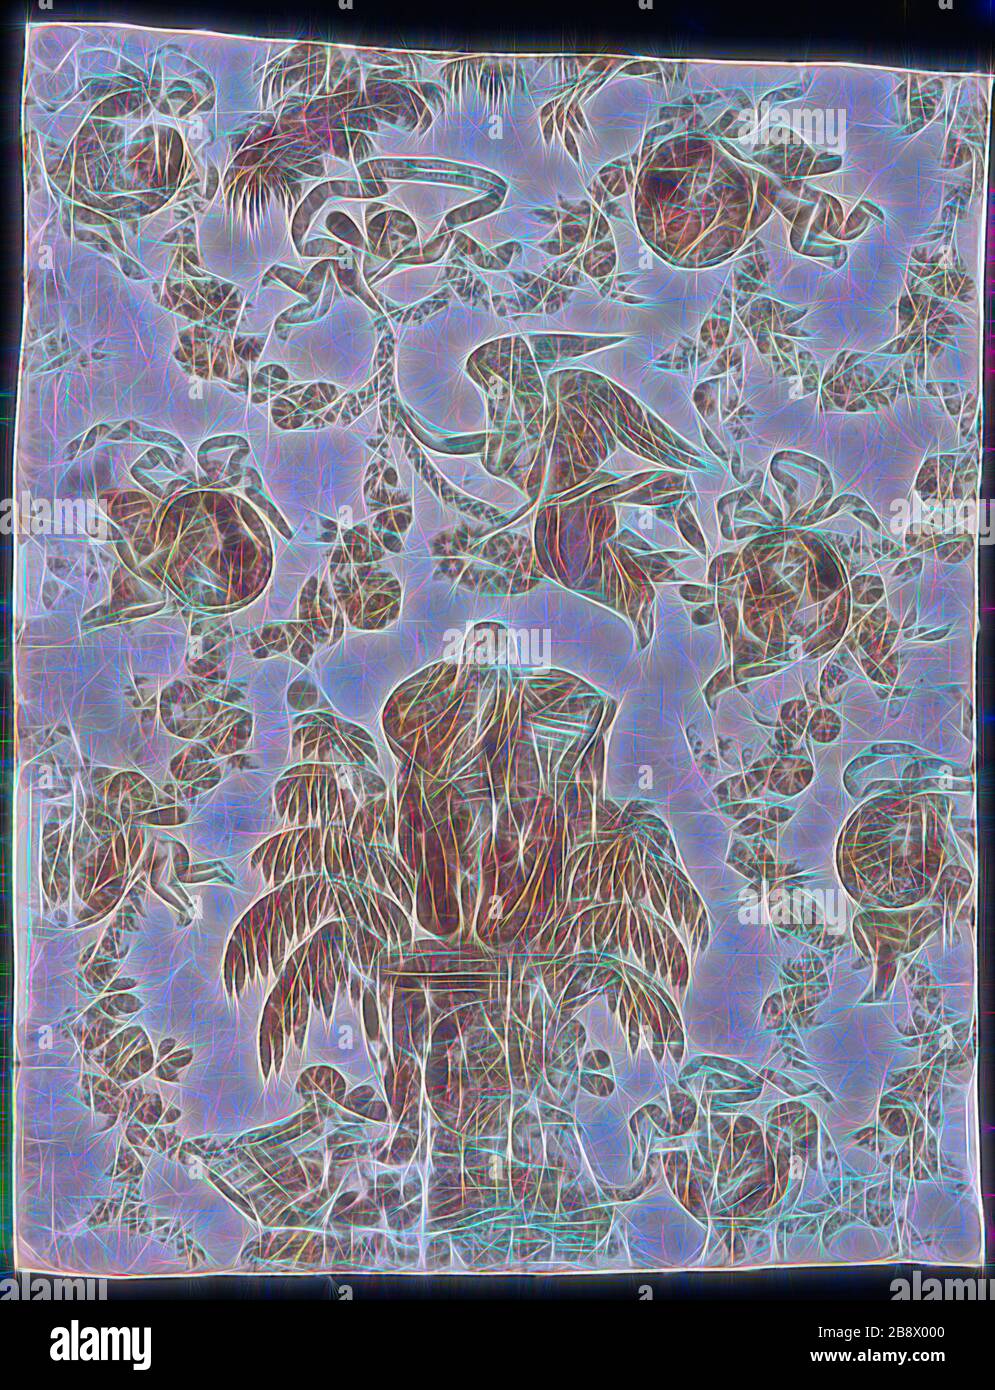 Shakespeare e Garrick (tessuti d'arredo), c. 1790, Louis Francois Roubillac (Francia, c. 1702-1762), Inghilterra, cotone, tessitura piana, stampato in rame, 86,4 × 68,6 cm (34 × 27 in.), reimmaginata da Gibon, disegno di calore allegro di luminosità e raggi di luce radianza. Arte classica reinventata con un tocco moderno. La fotografia ispirata al futurismo, che abbraccia l'energia dinamica della tecnologia moderna, del movimento, della velocità e rivoluziona la cultura. Foto Stock